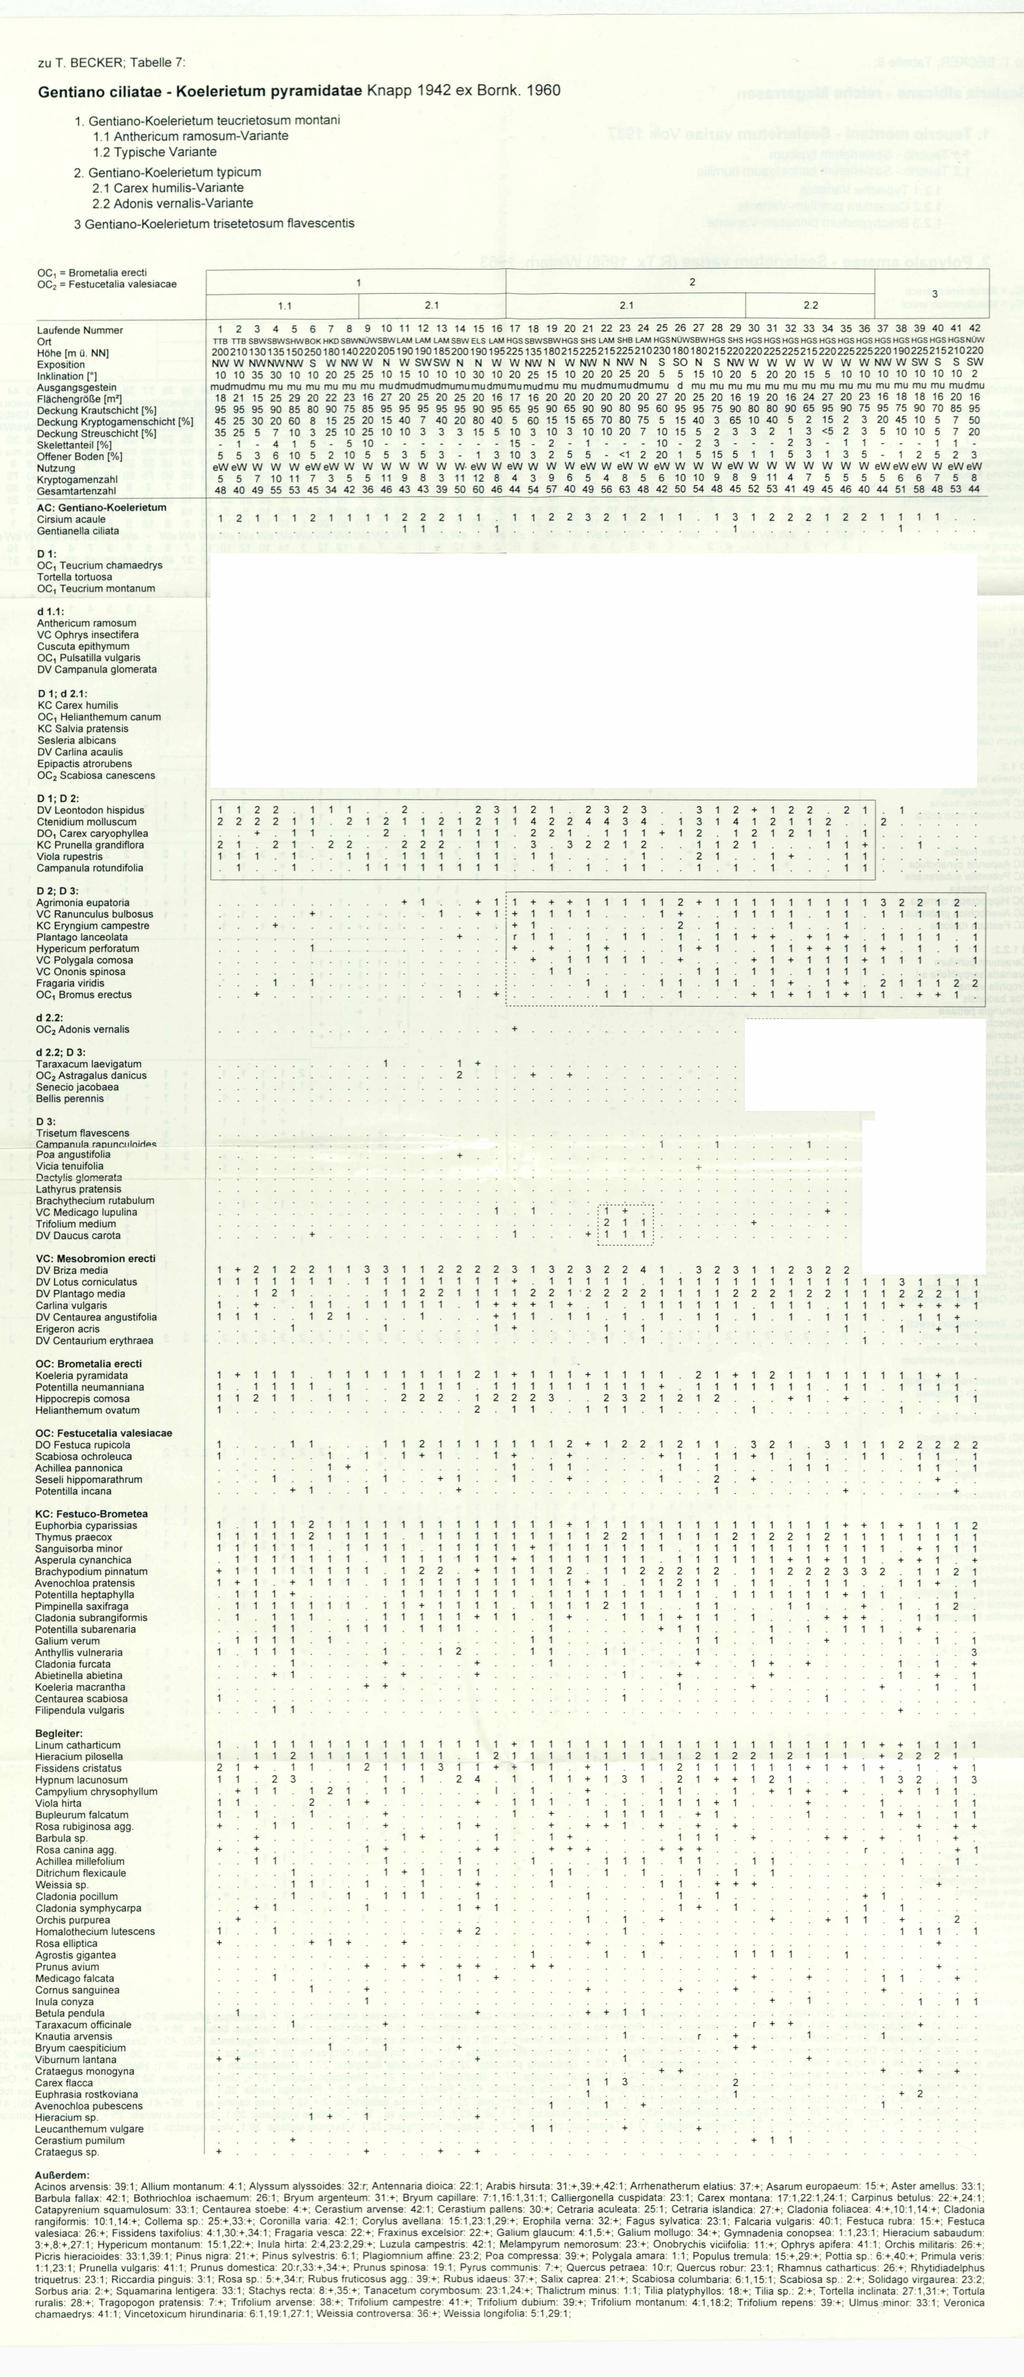 Floristisch-soziologische Arbeitsgemeinschft; wwwtuexeniade; download unter wwwzobodatat zu T BECKER; Tabelle 7: Gentiano ciliatae - Koelerietum pyramidatae Knapp 94 ex Bornk 960 Gentiano-Koelerietum